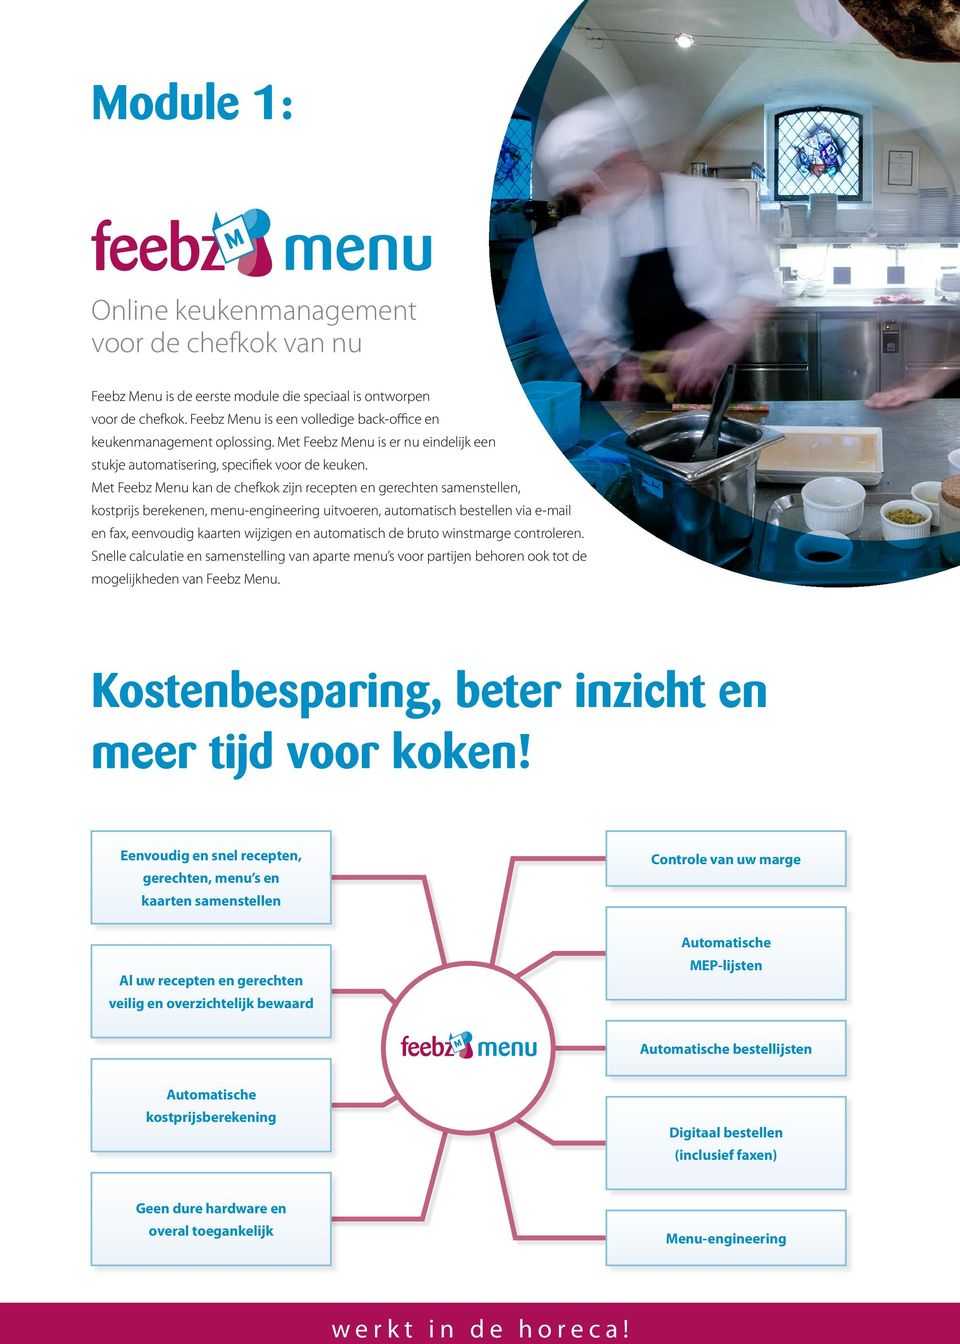 Met Feebz Menu kan de chefkok zijn recepten en gerechten samenstellen, kostprijs berekenen, menu-engineering uitvoeren, automatisch bestellen via e-mail en fax, eenvoudig kaarten wijzigen en